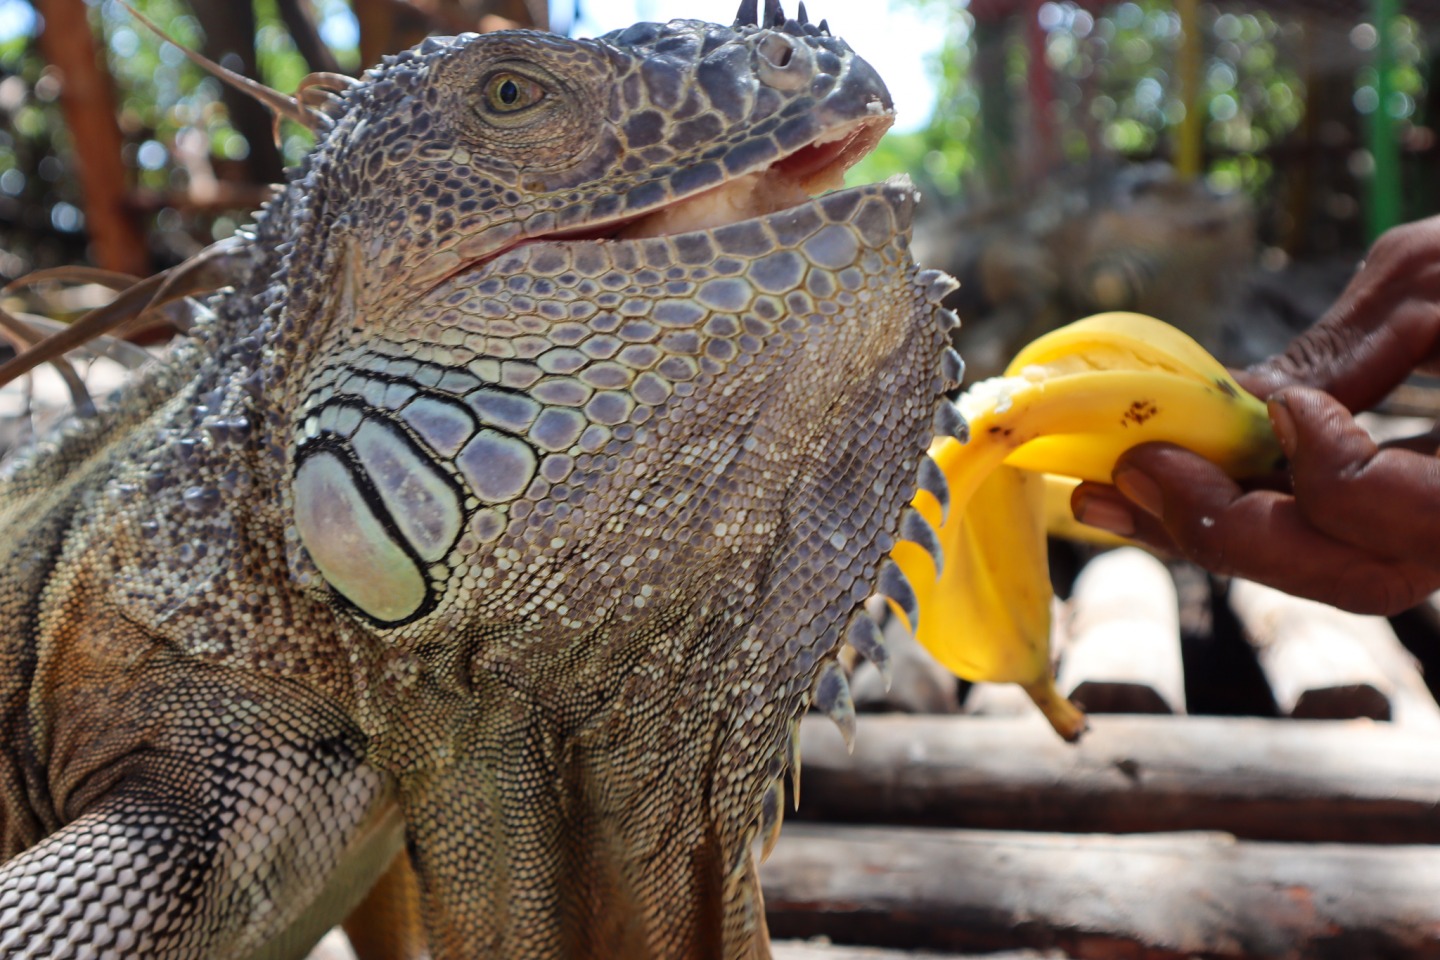 Feeding banana to green iguana